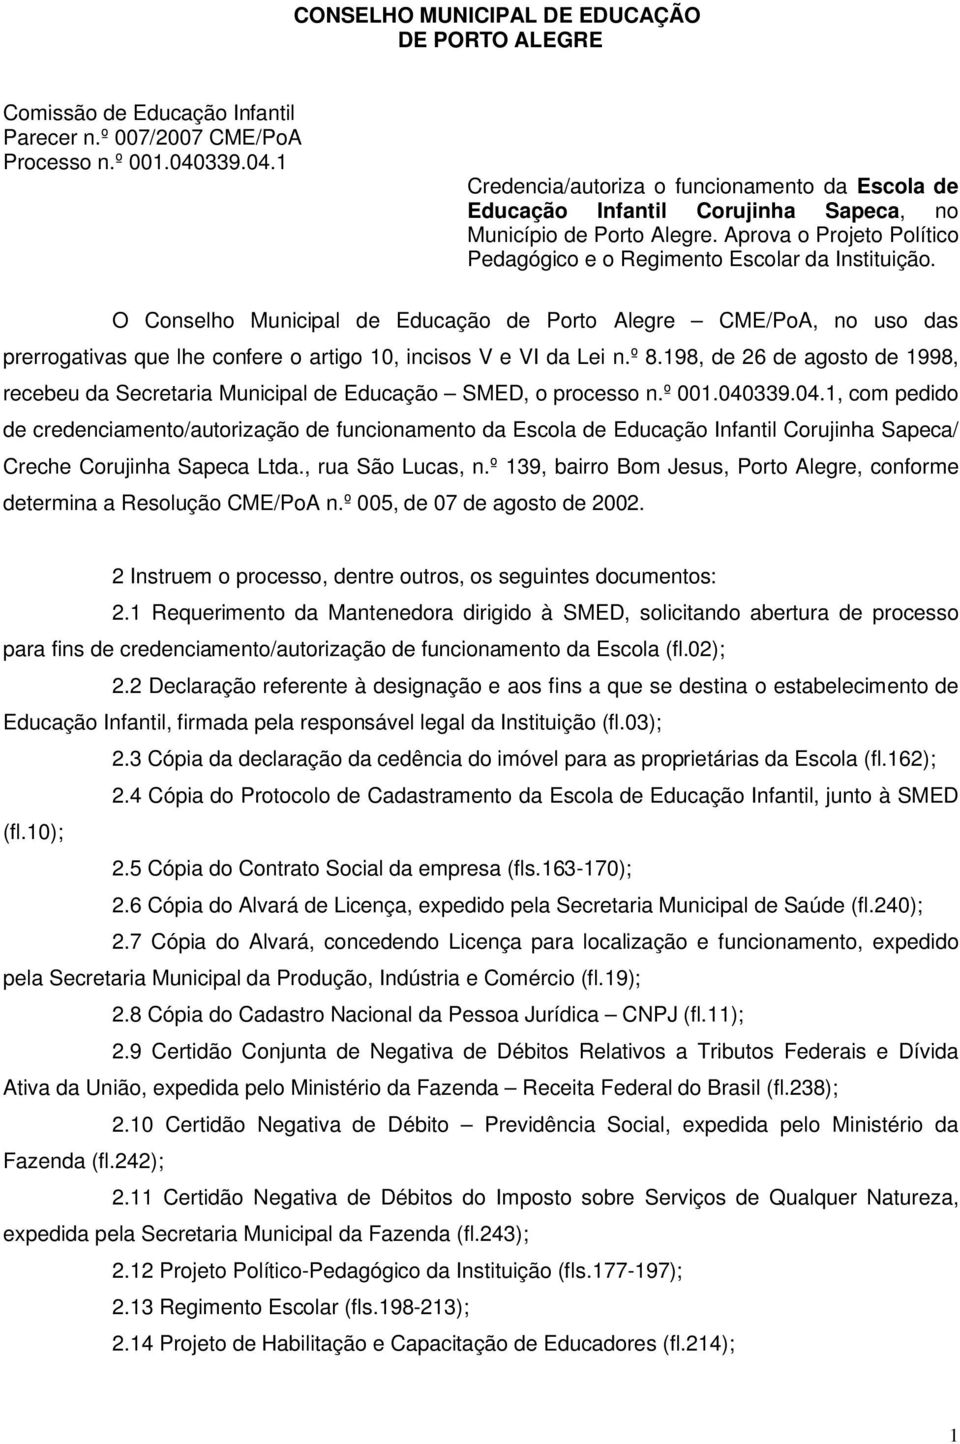 O Conselho Municipal de Educação de Porto Alegre CME/PoA, no uso das prerrogativas que lhe confere o artigo 10, incisos V e VI da Lei n.º 8.